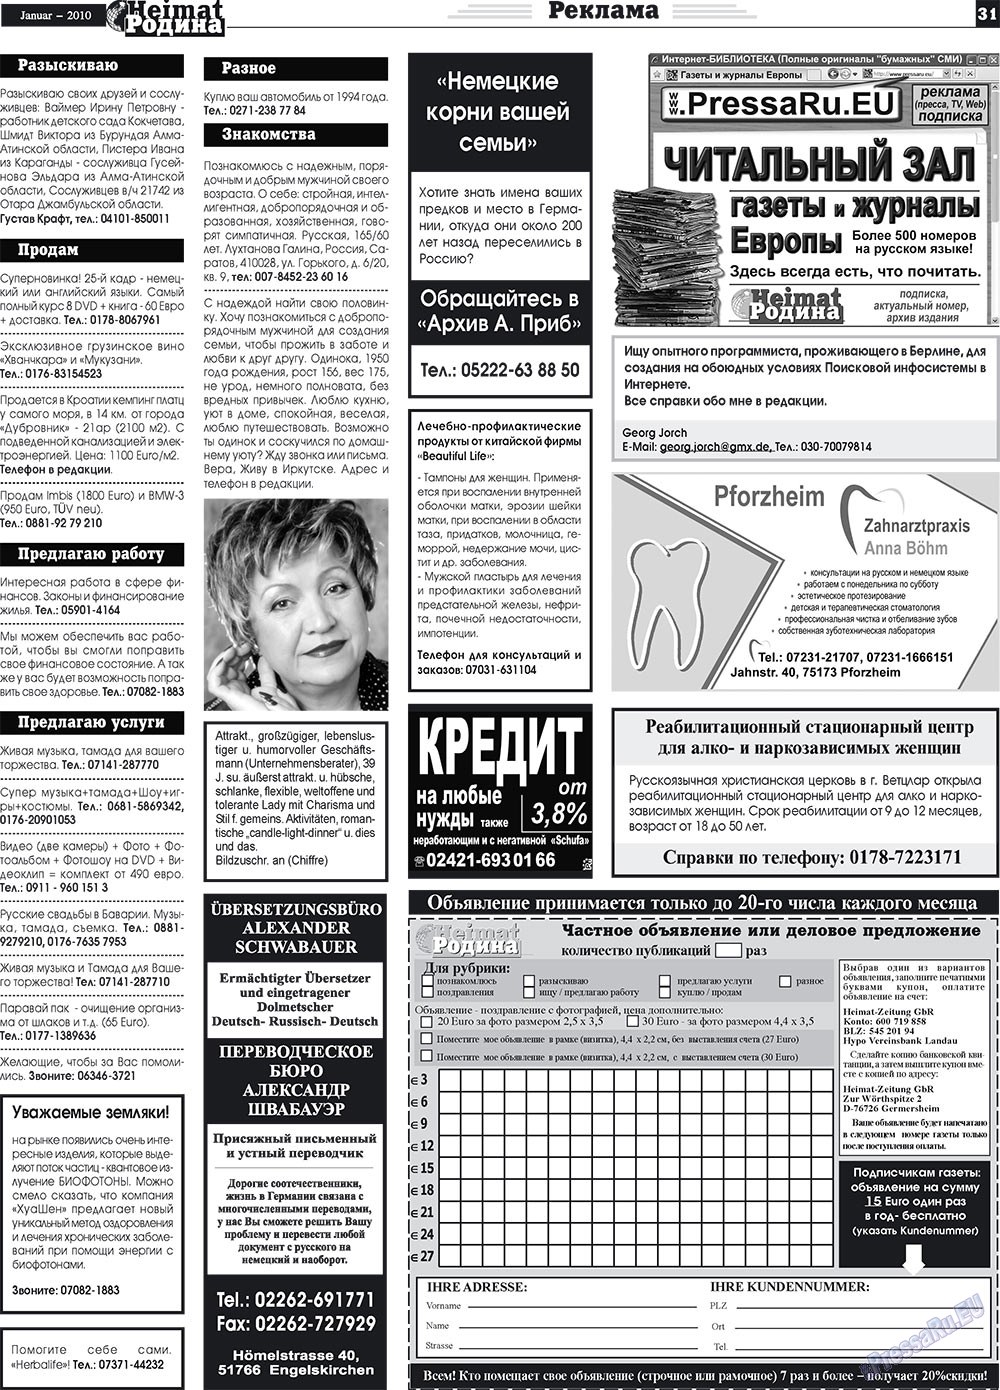 Heimat-Родина (газета). 2010 год, номер 1, стр. 31